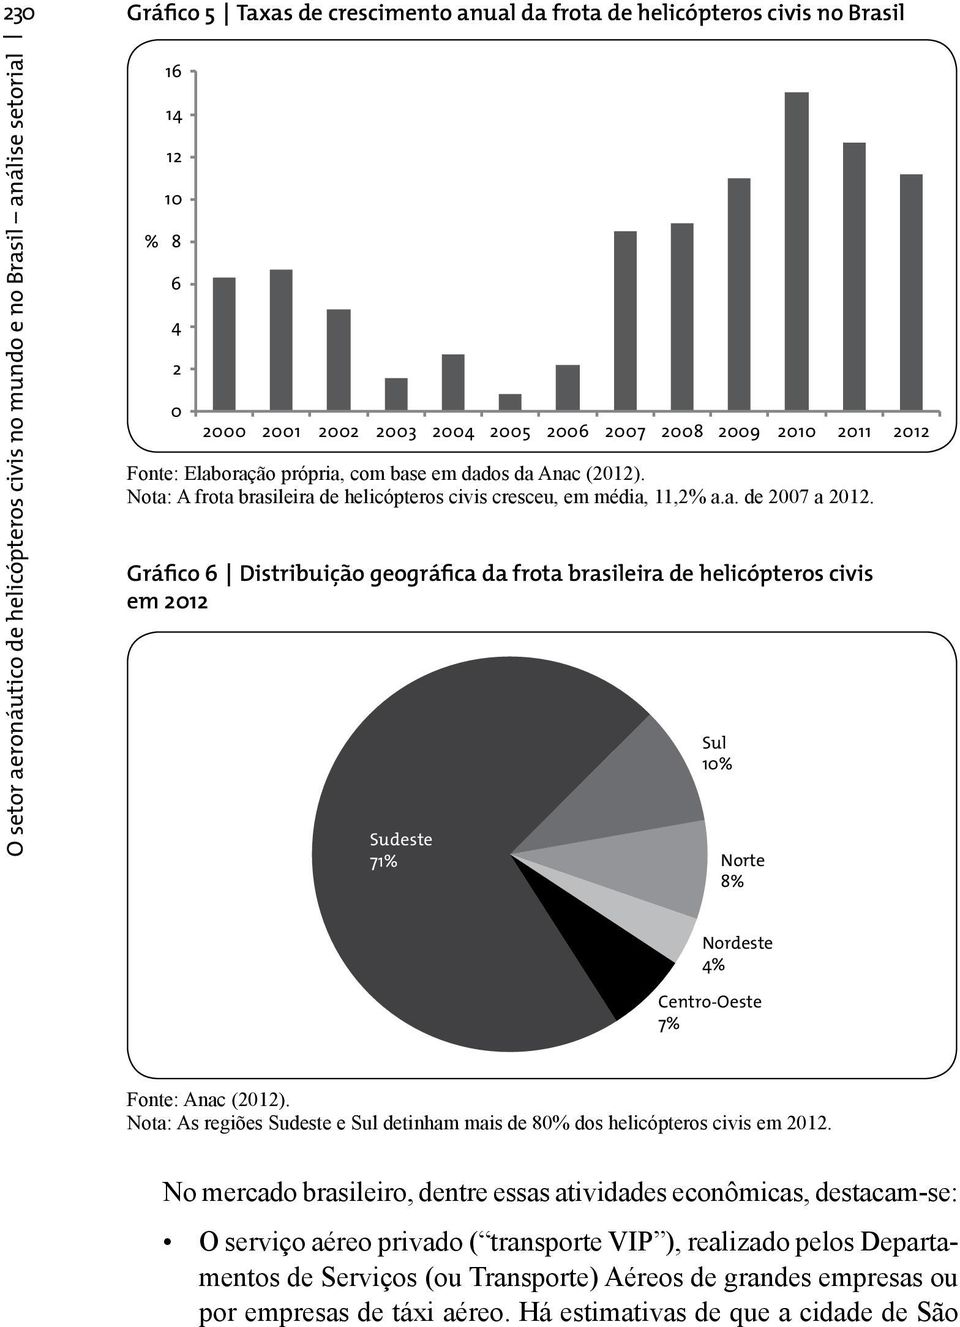 Gráfico 6 Distribuição geográfica da frota brasileira de helicópteros civis em 2012 Sudeste 71% Sul 10% Norte 8% Nordeste 4% Centro-Oeste 7% Fonte: Anac (2012).